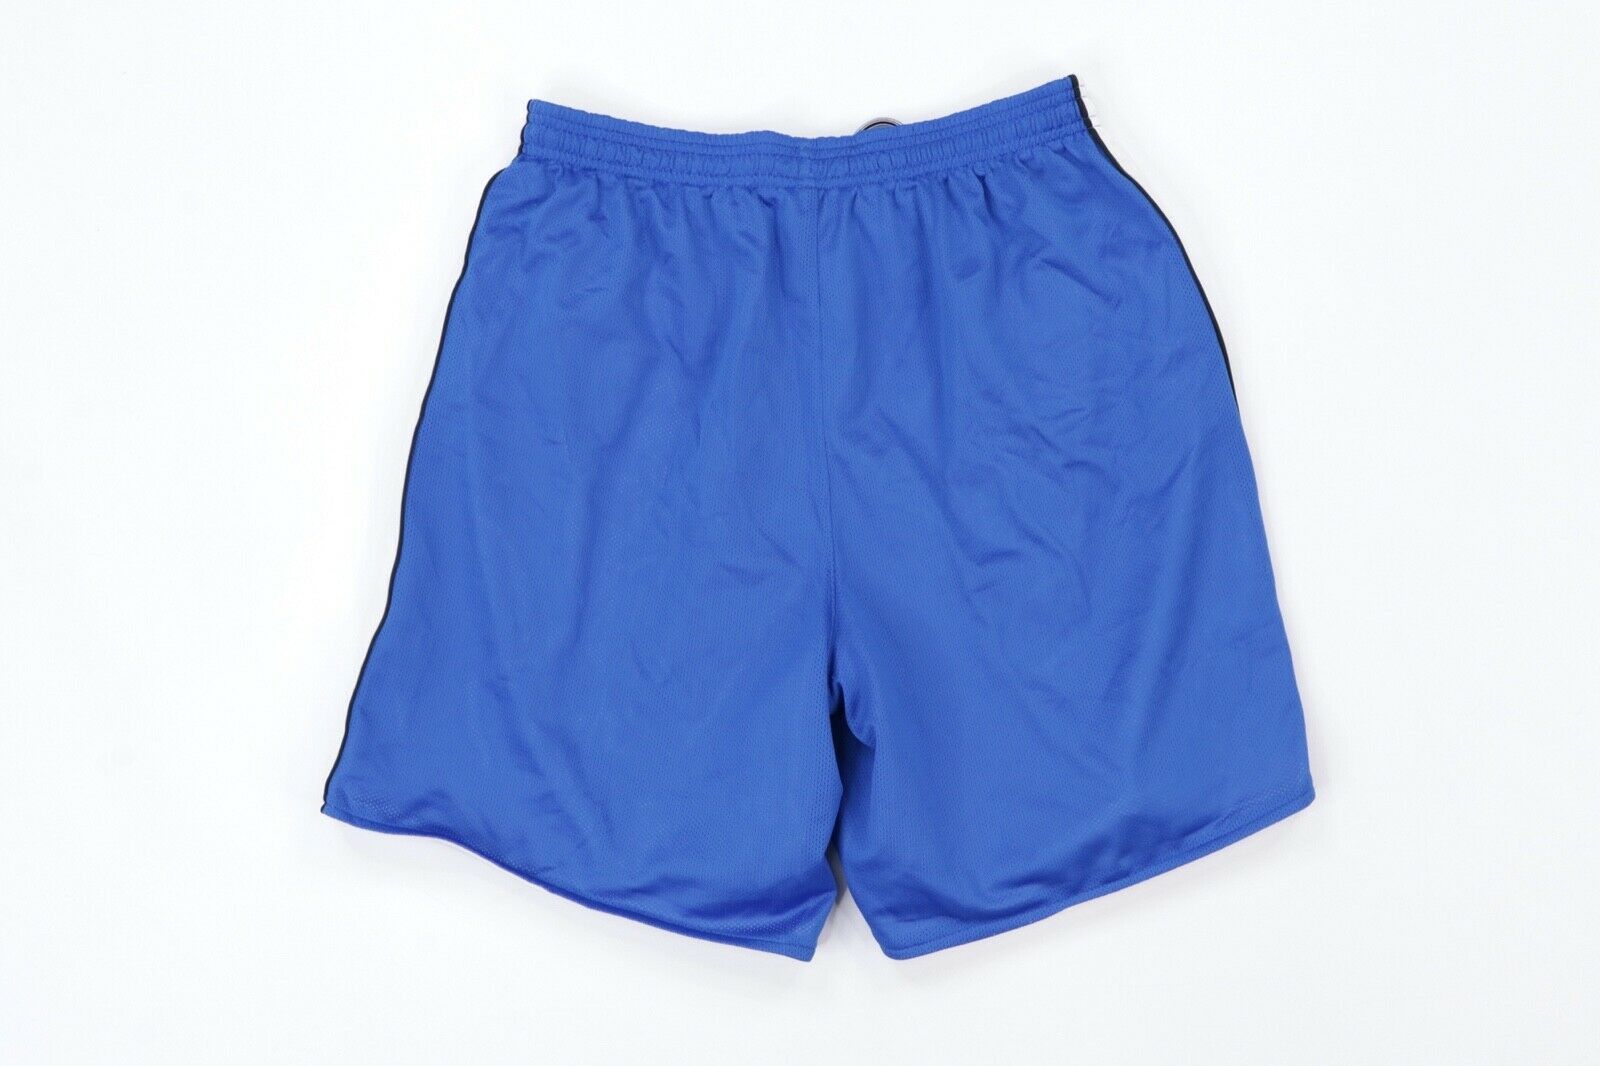 Nike Vintage Nike Total 90 Reversible Soccer Shorts Blue White M Size US 30 / EU 46 - 4 Thumbnail